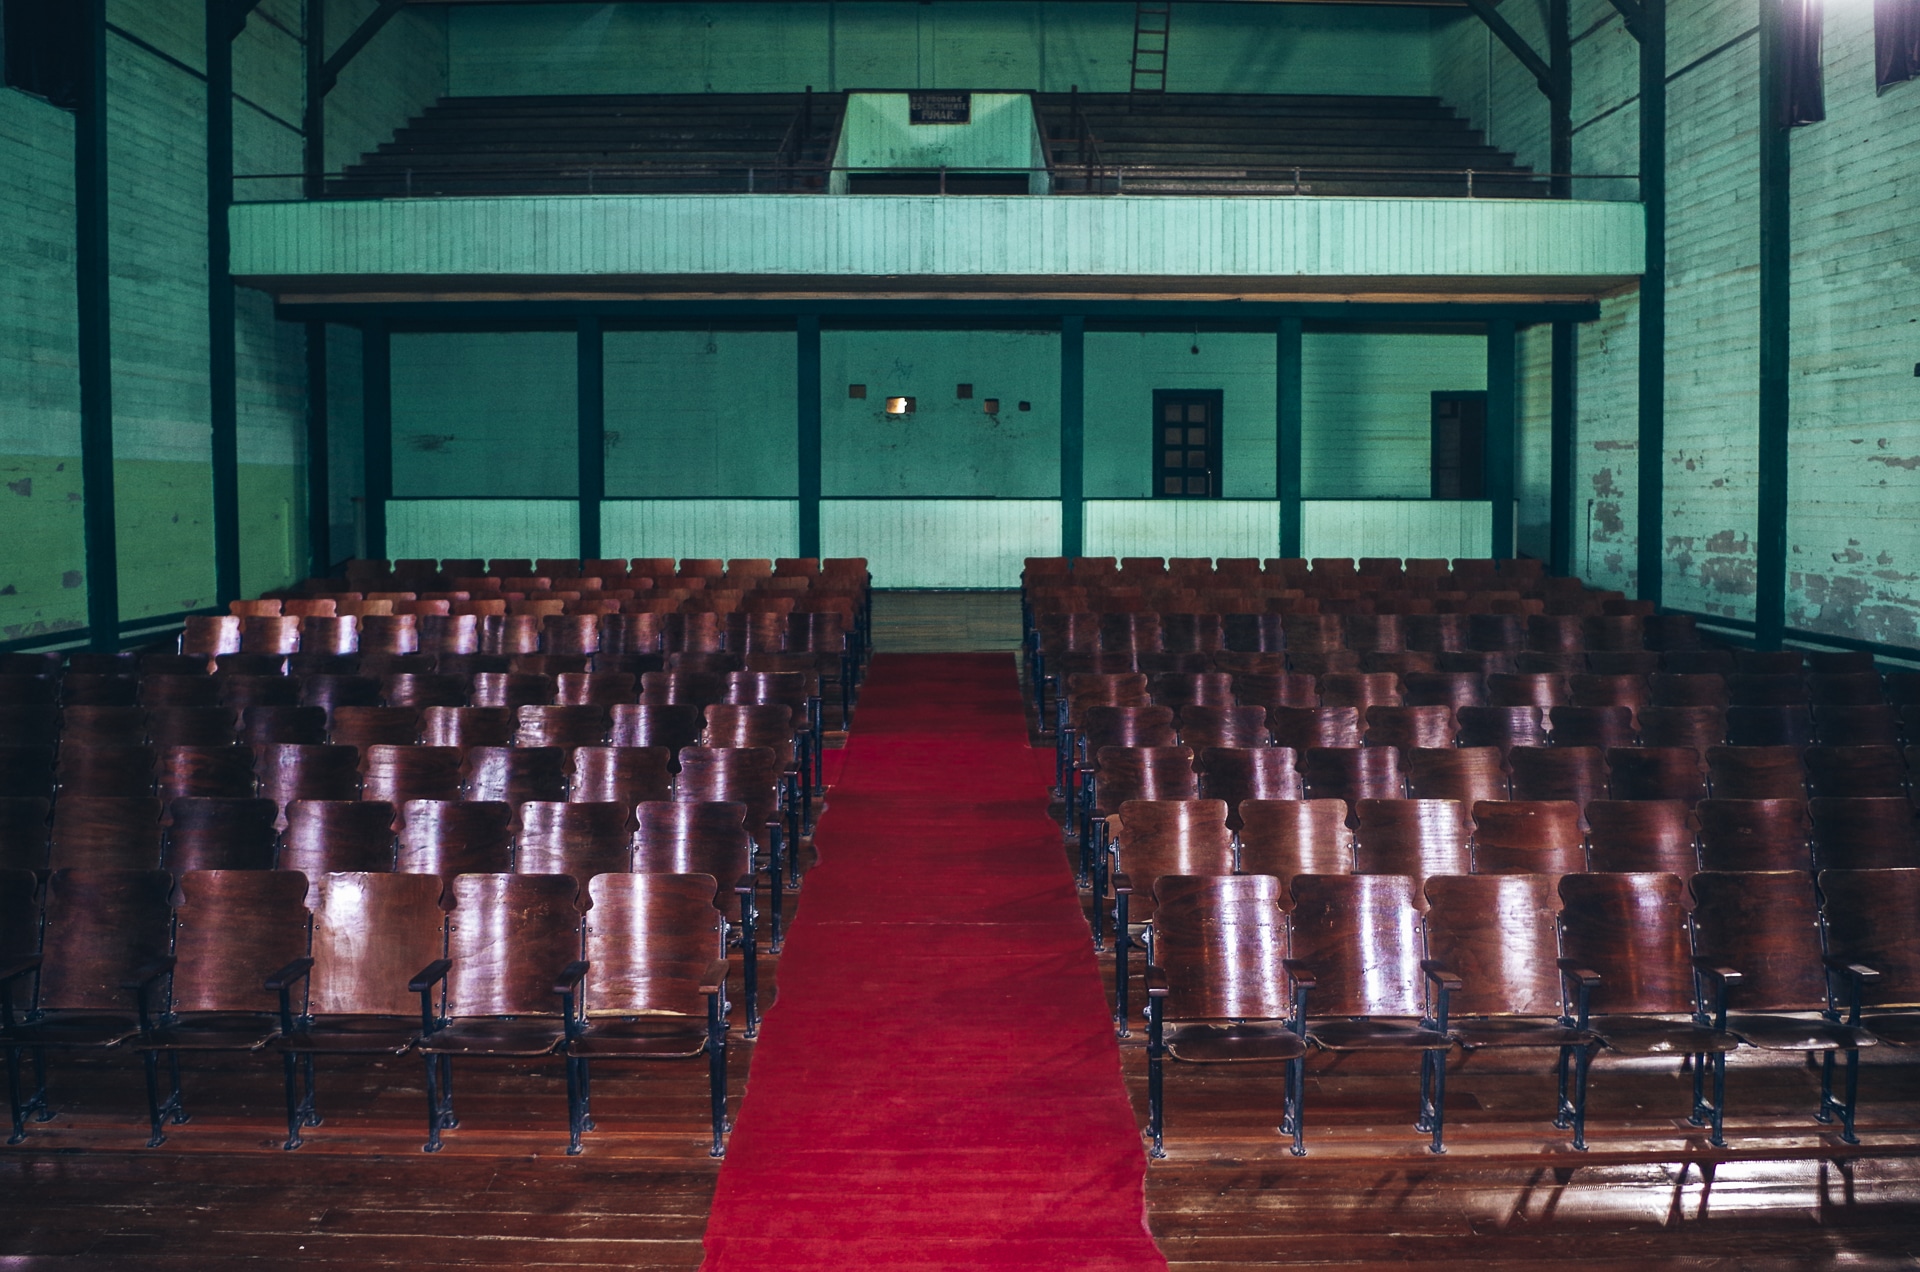 intérieur du théâtre d'Humberstone avec ses sièges en bois et son tapis rouge